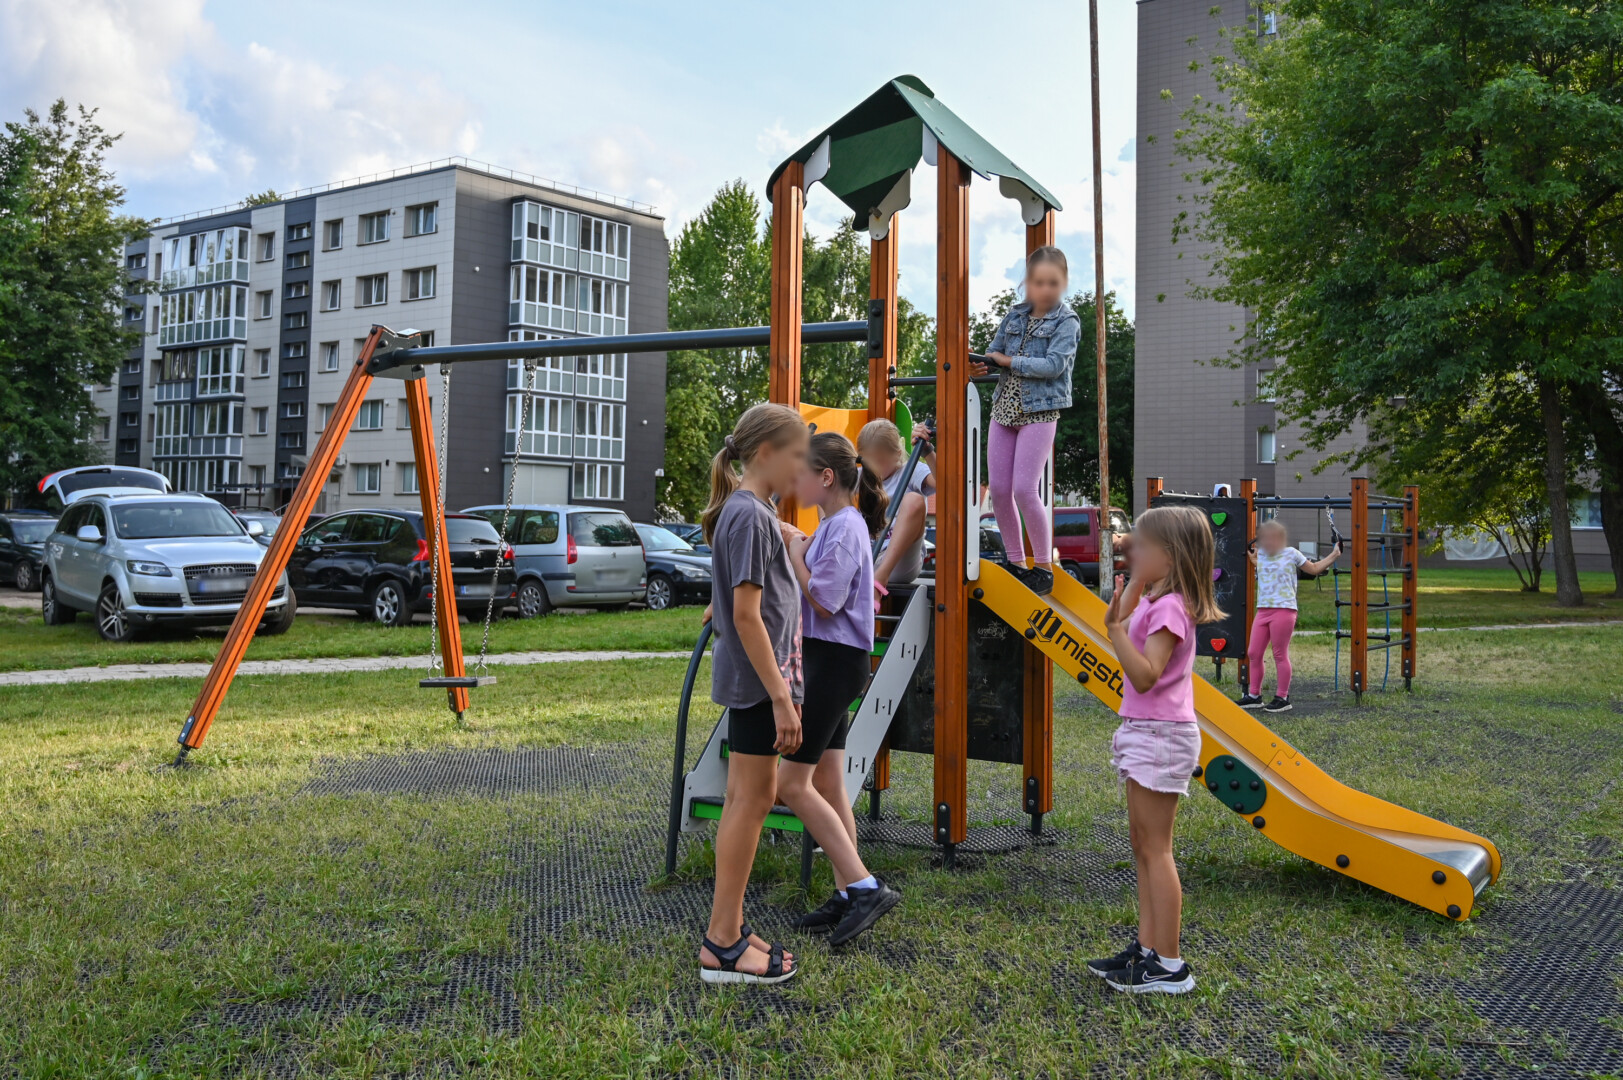 Šeimoms draugišku miestu besiskelbiantis Panevėžys didžiuojasi vaikų žaidimo aikštelių gausa.